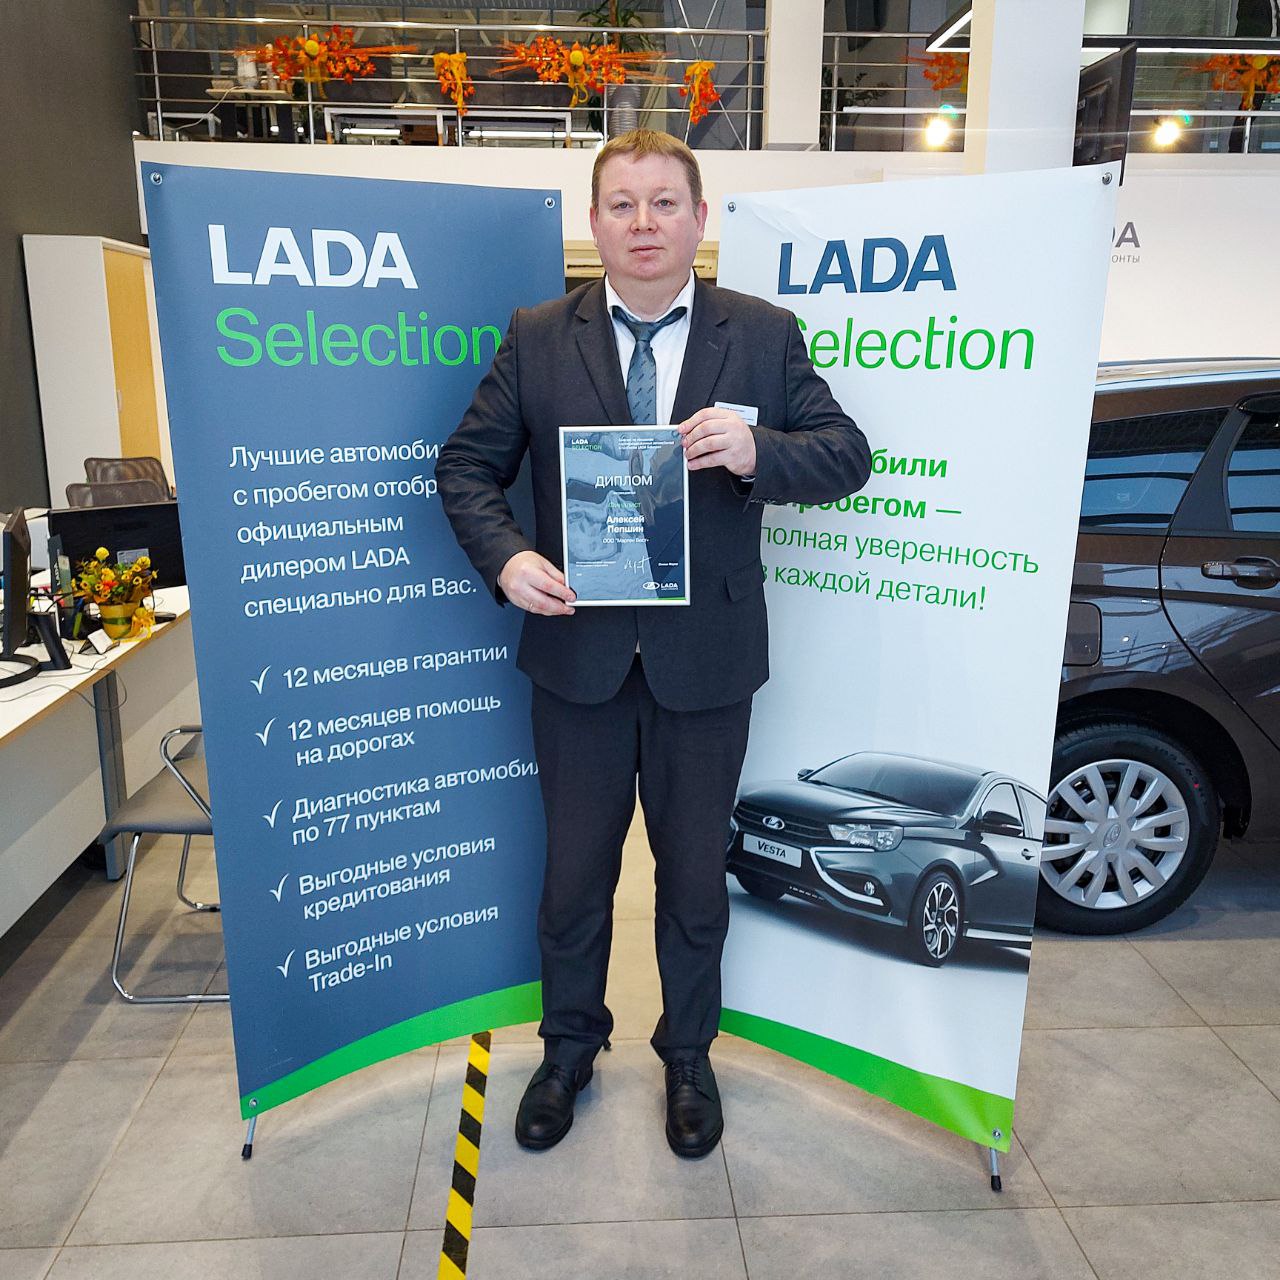 Пепшин Алексей стал финалистом конкурса по реализации сертифицированных автомобилей с гарантией LADA Selection.